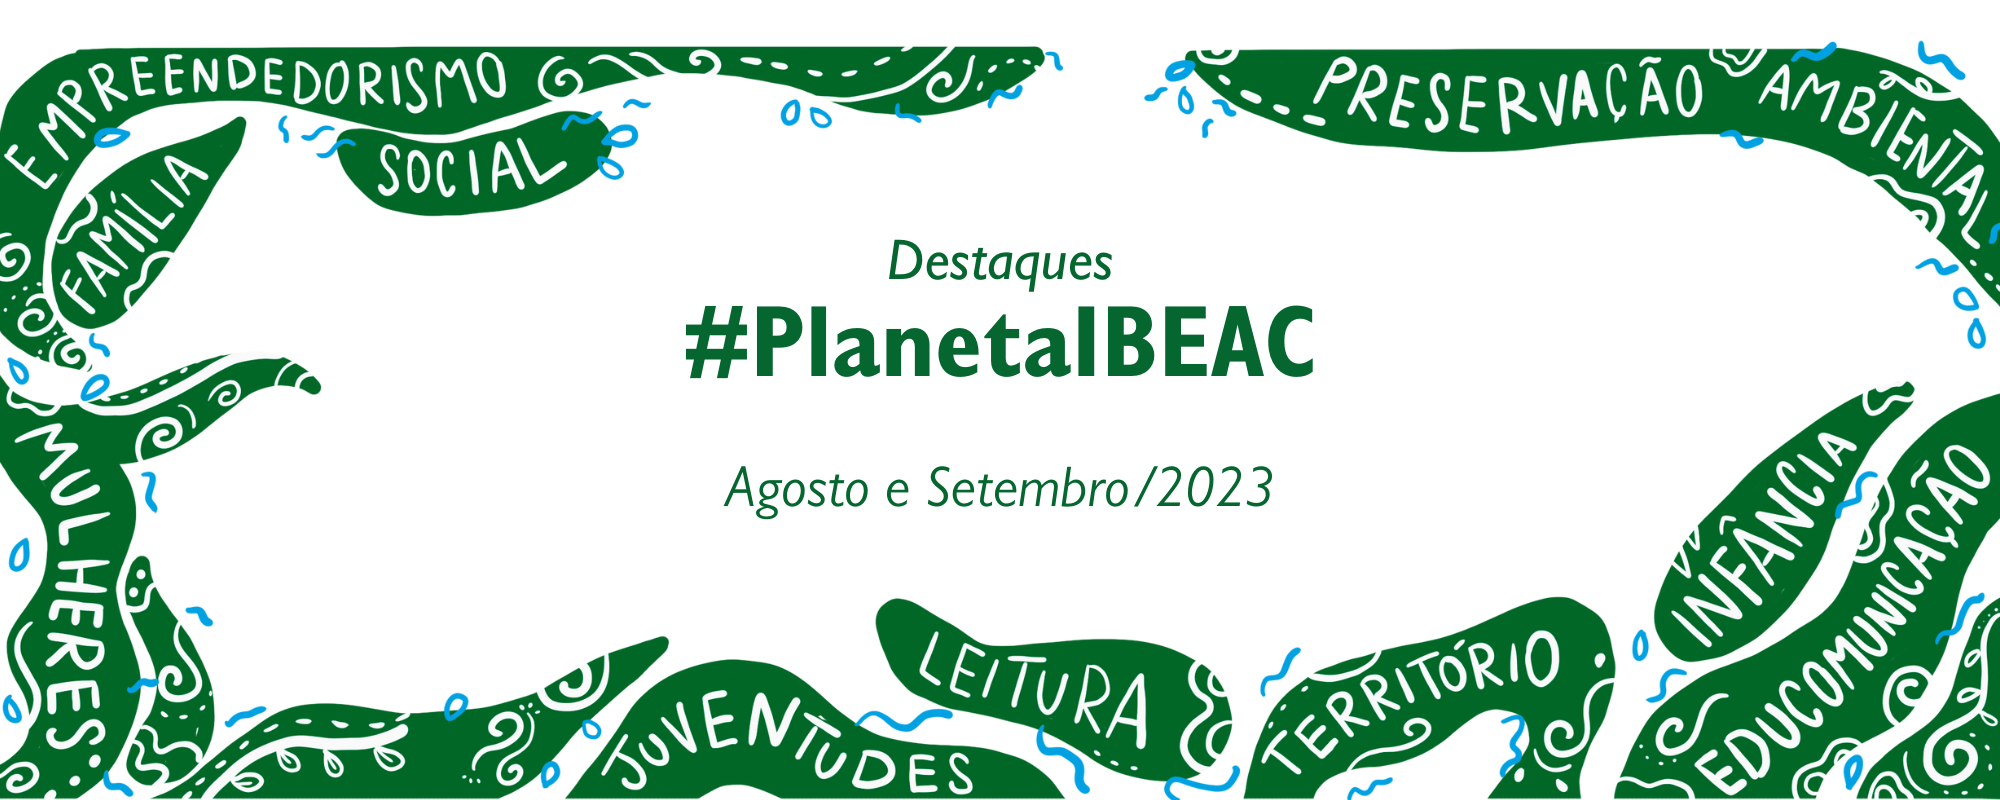 Destaques #PlanetaIbeac | Agosto e Setembro/2023